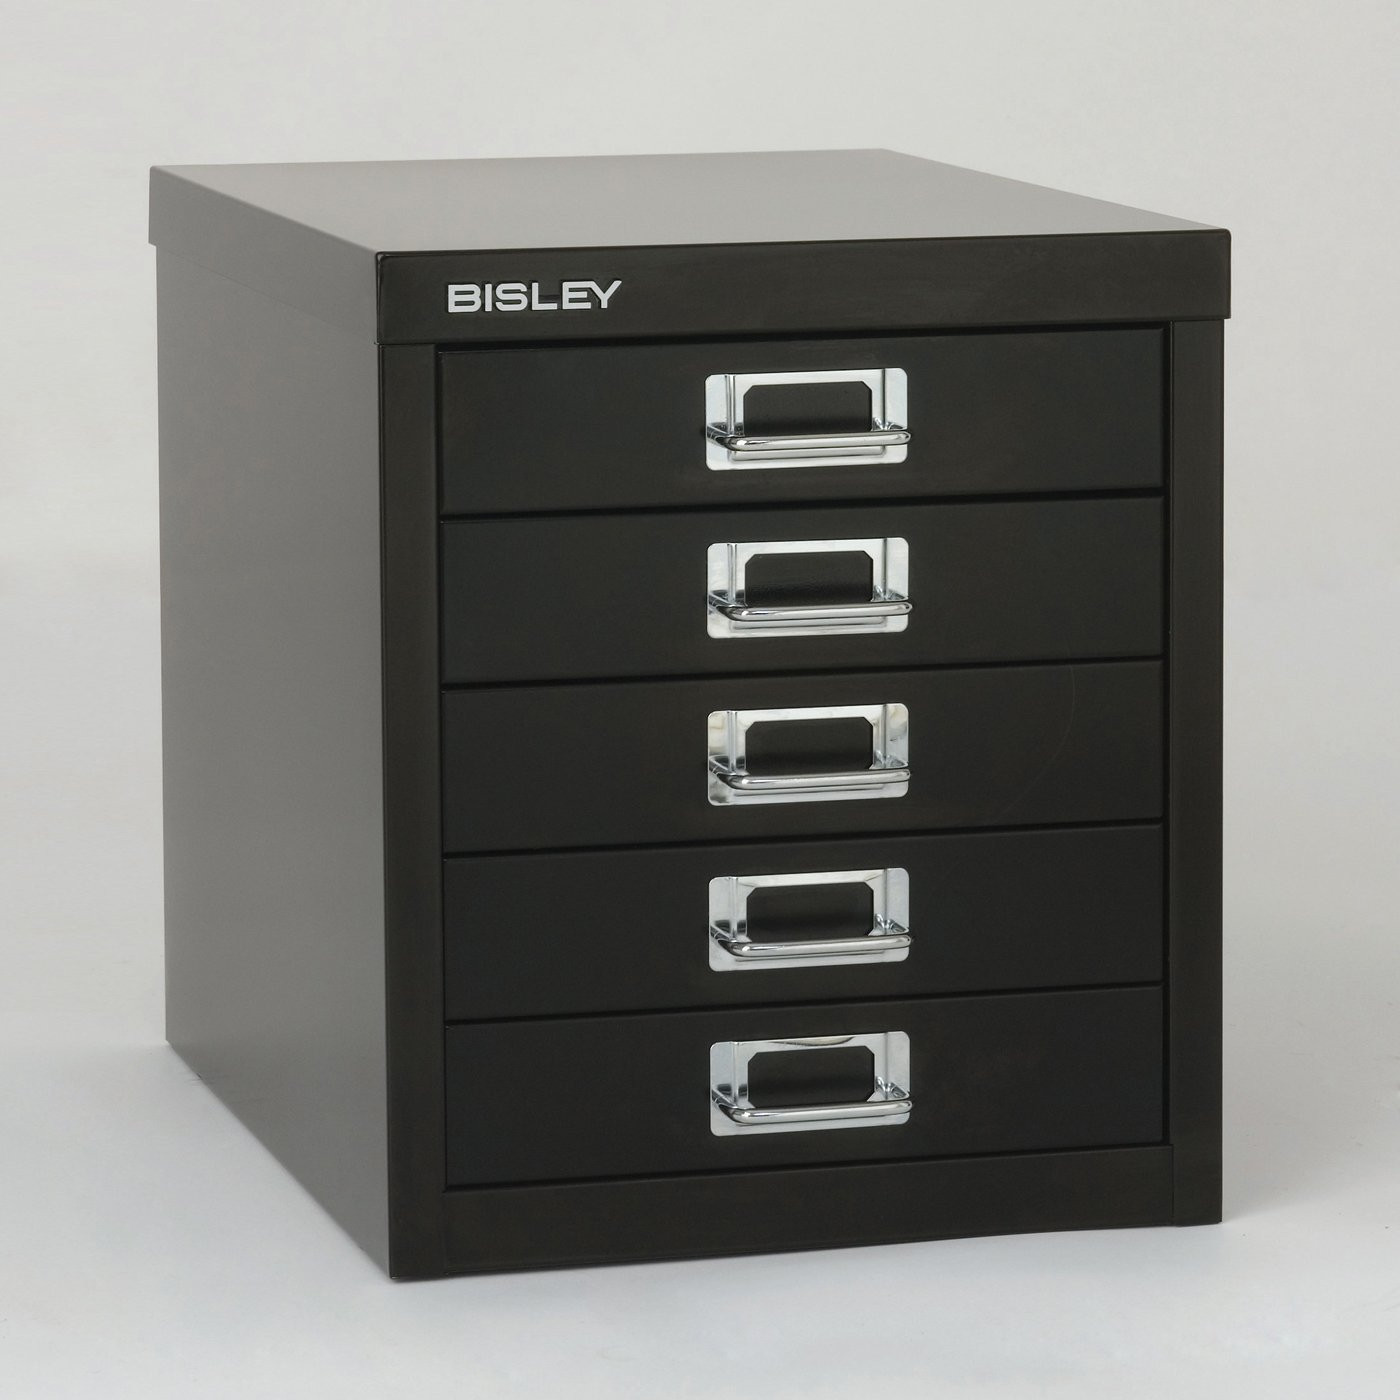 Best ideas about Bisley File Cabinet
. Save or Pin Bindertek MD5 Bisley Desktop Five Drawer File Cabinet Now.